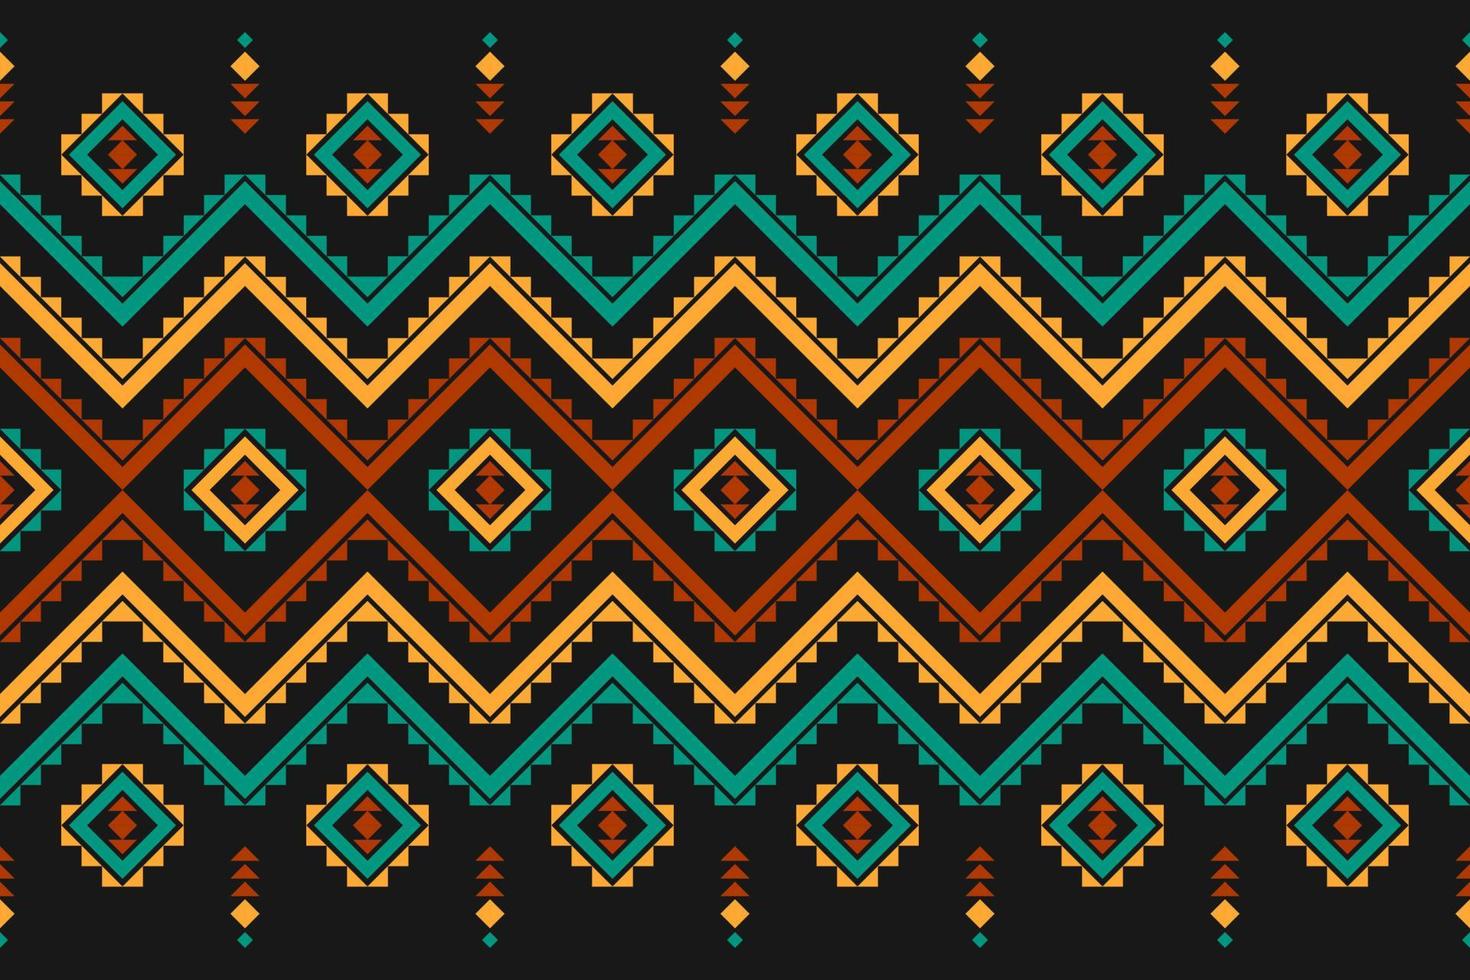 arte de patrón tribal de alfombra. patrón geométrico étnico sin fisuras tradicional. estilo americano, mexicano. vector